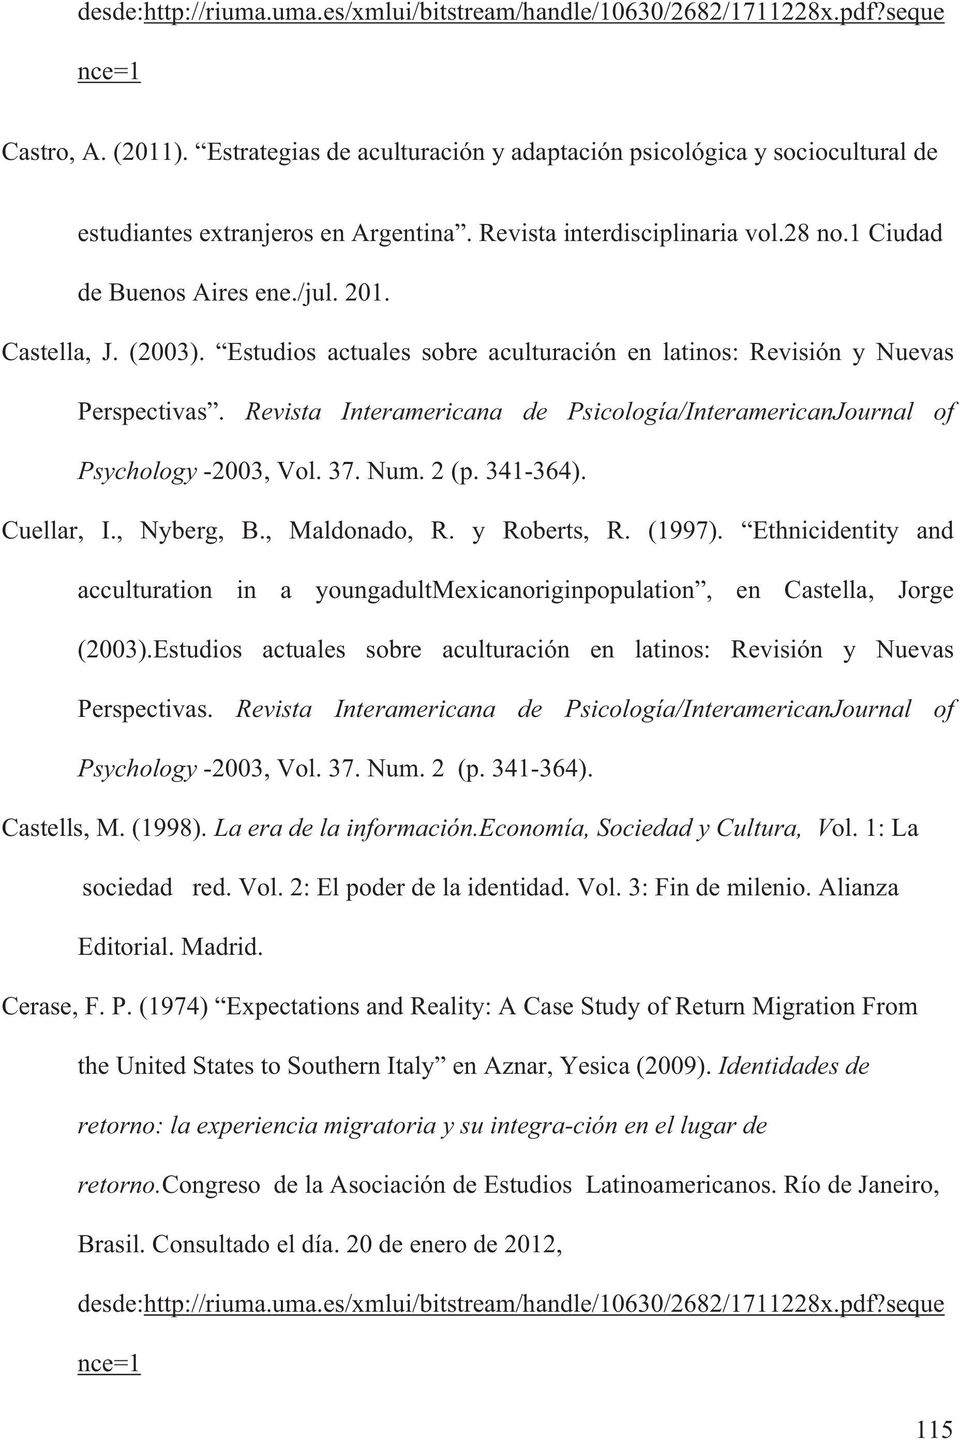 (2003). Estudios actuales sobre aculturación en latinos: Revisión y Nuevas Perspectivas. Revista Interamericana de Psicología/InteramericanJournal of Psychology -2003, Vol. 37. Num. 2 (p. 341-364).